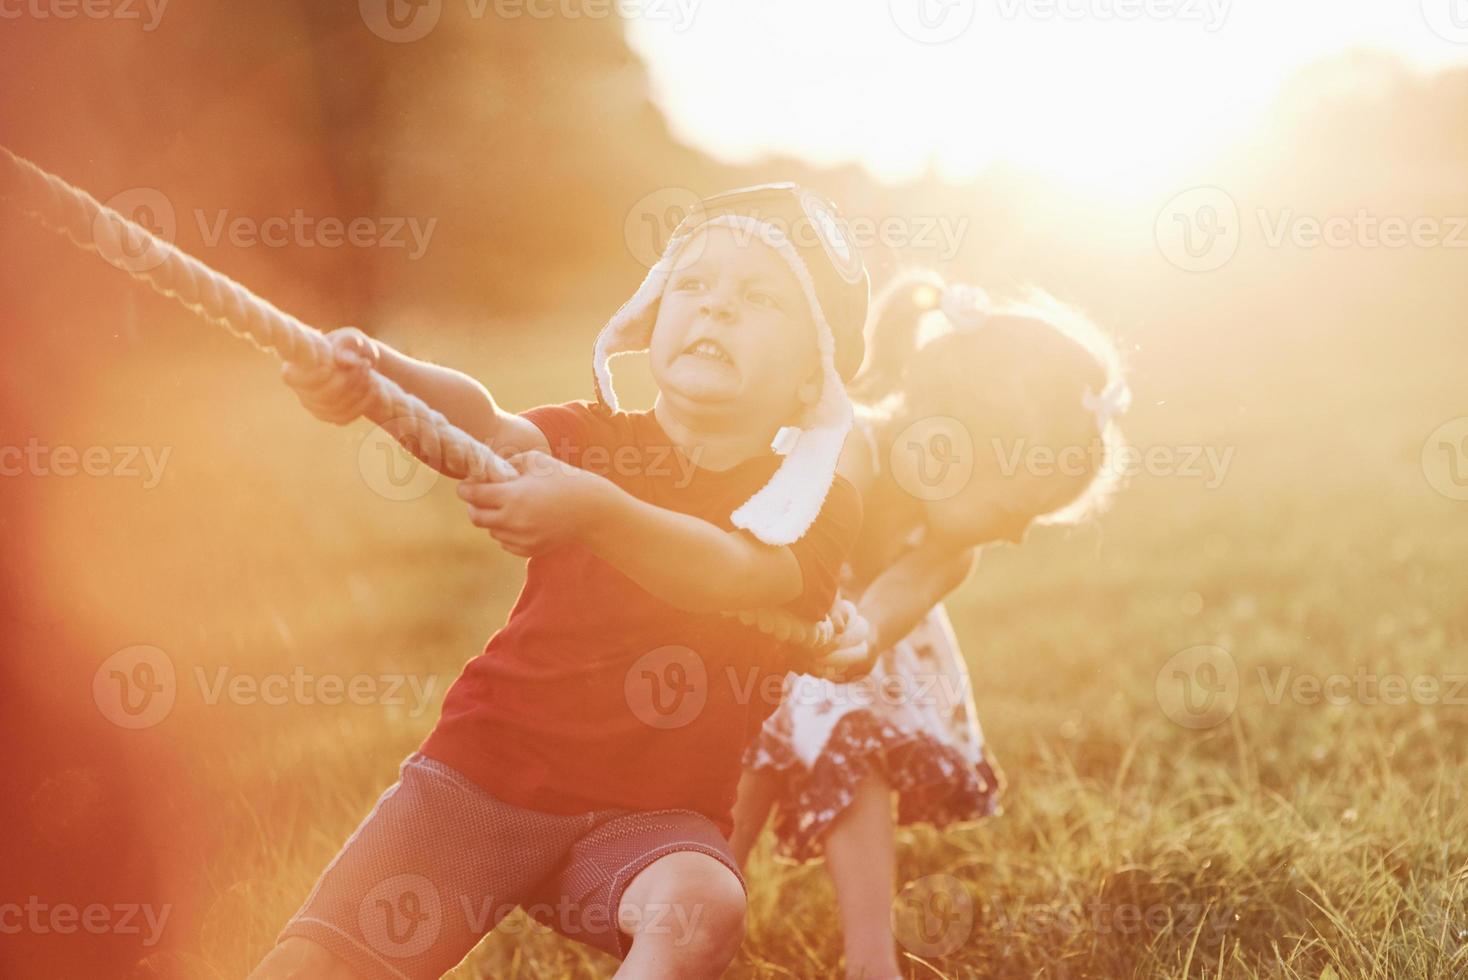 sinto a força em minhas mãos. este é um cabo de guerra com o pai na linda grama de um dia quente e ensolarado foto